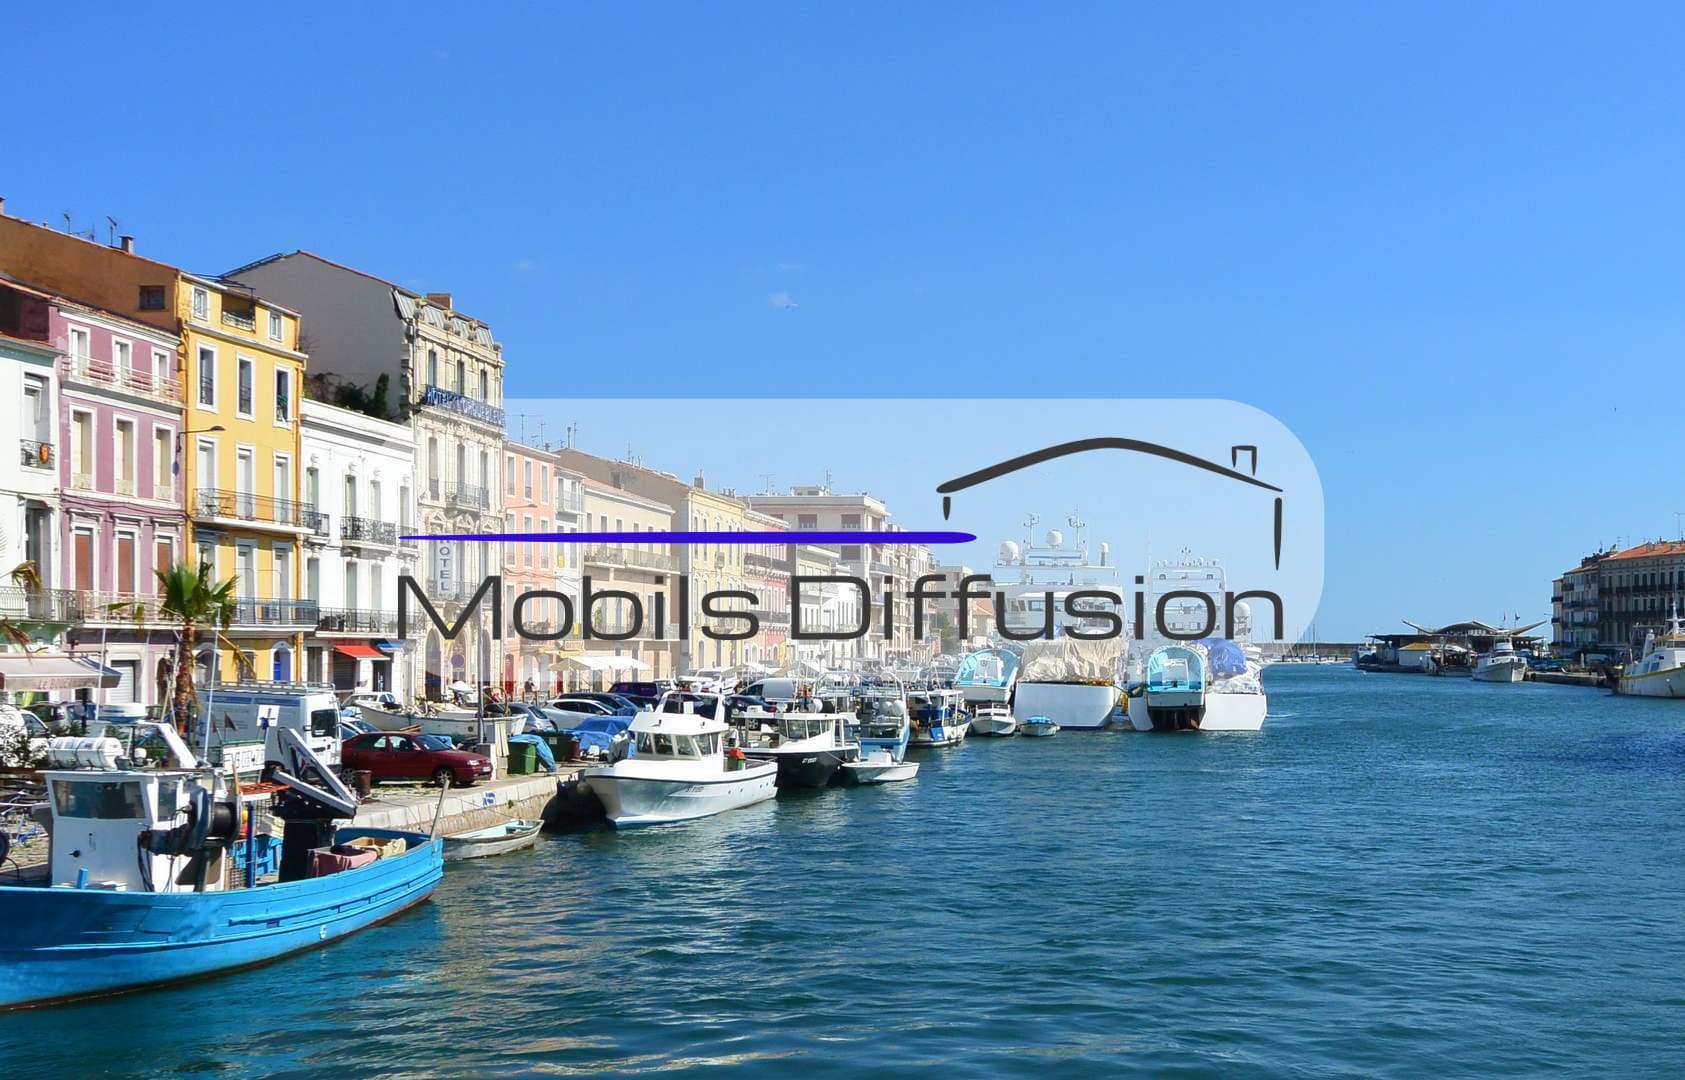 Mobils Diffusion - Vente et achat de mobil-home près de Marseillan (34)